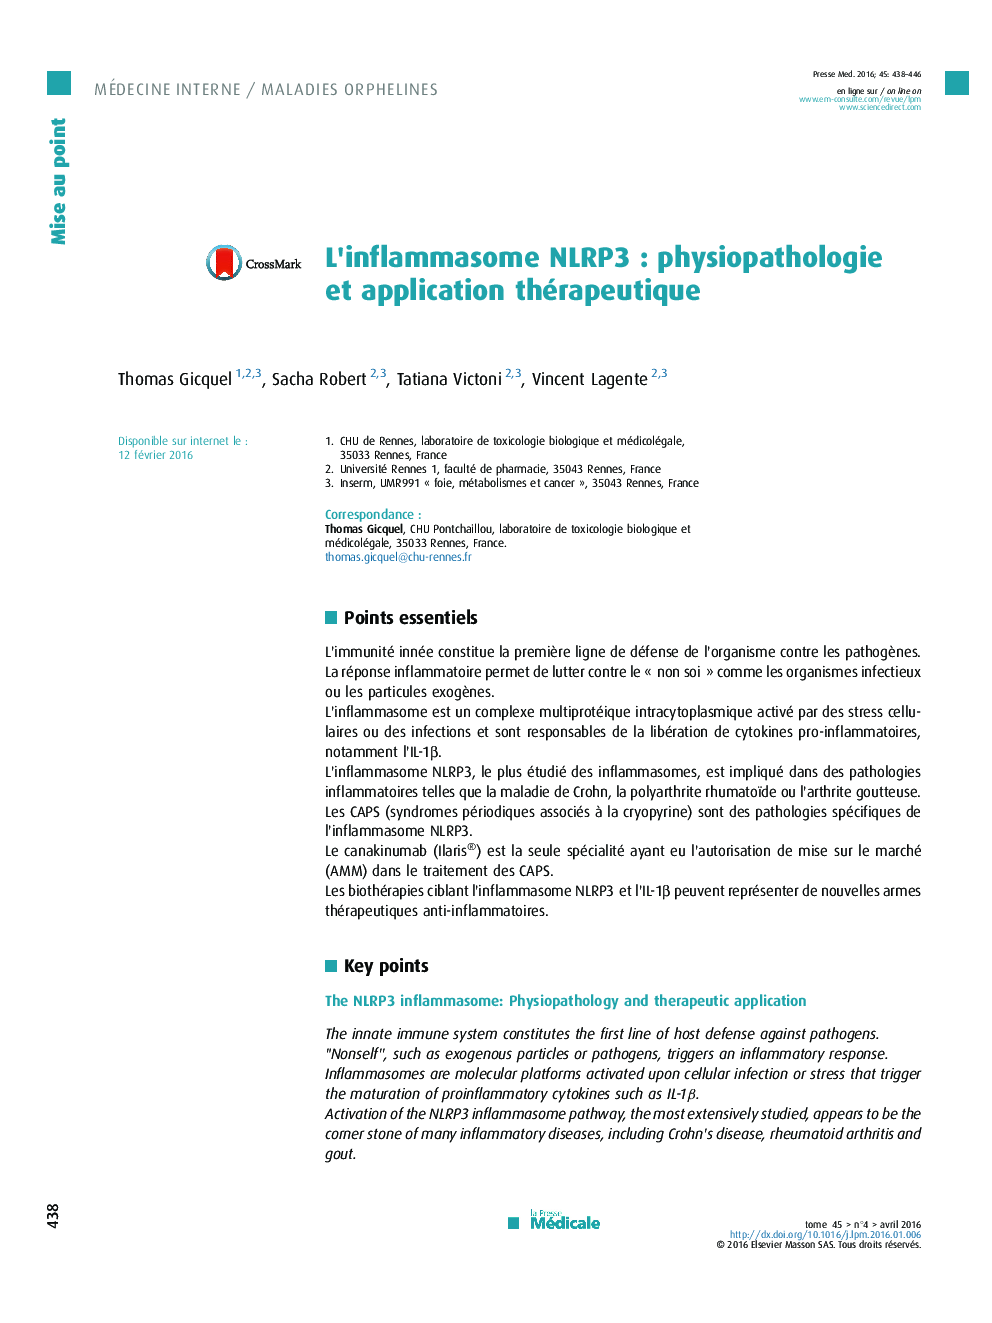 L’inflammasome NLRP3 : physiopathologie et application thérapeutique